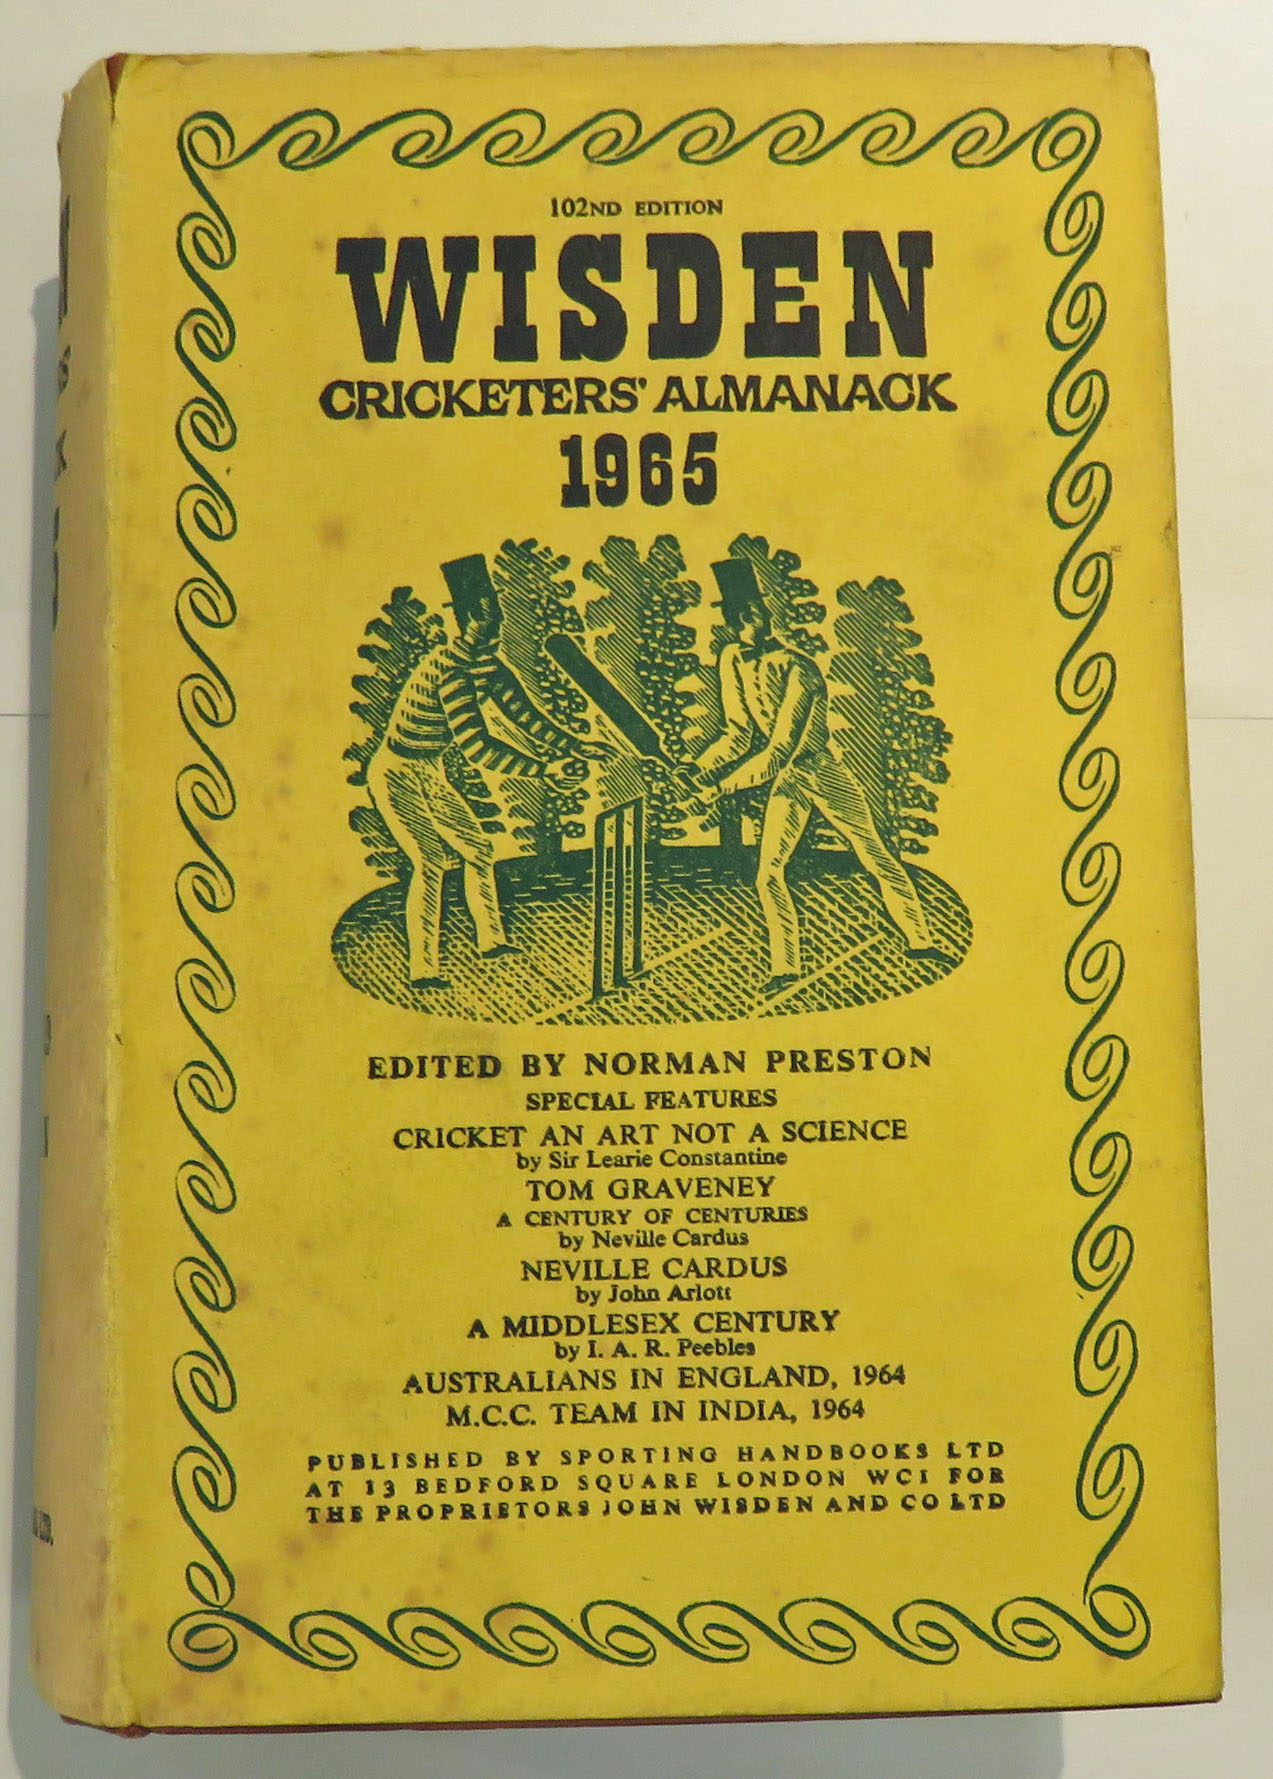 Wisden Cricketers' Almanack 1965